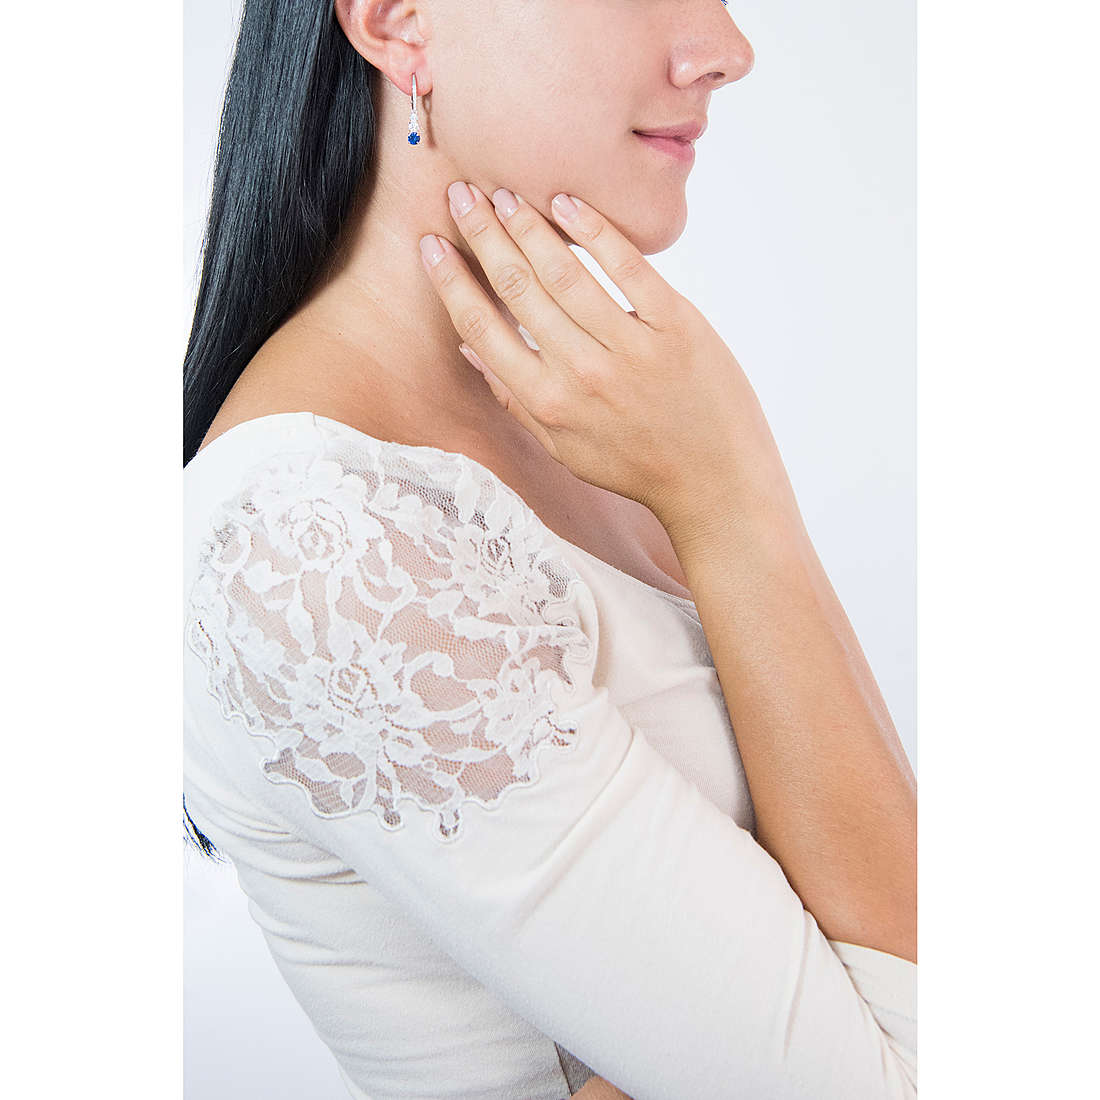 Swarovski earrings Attract Trilogy woman 5416154 wearing